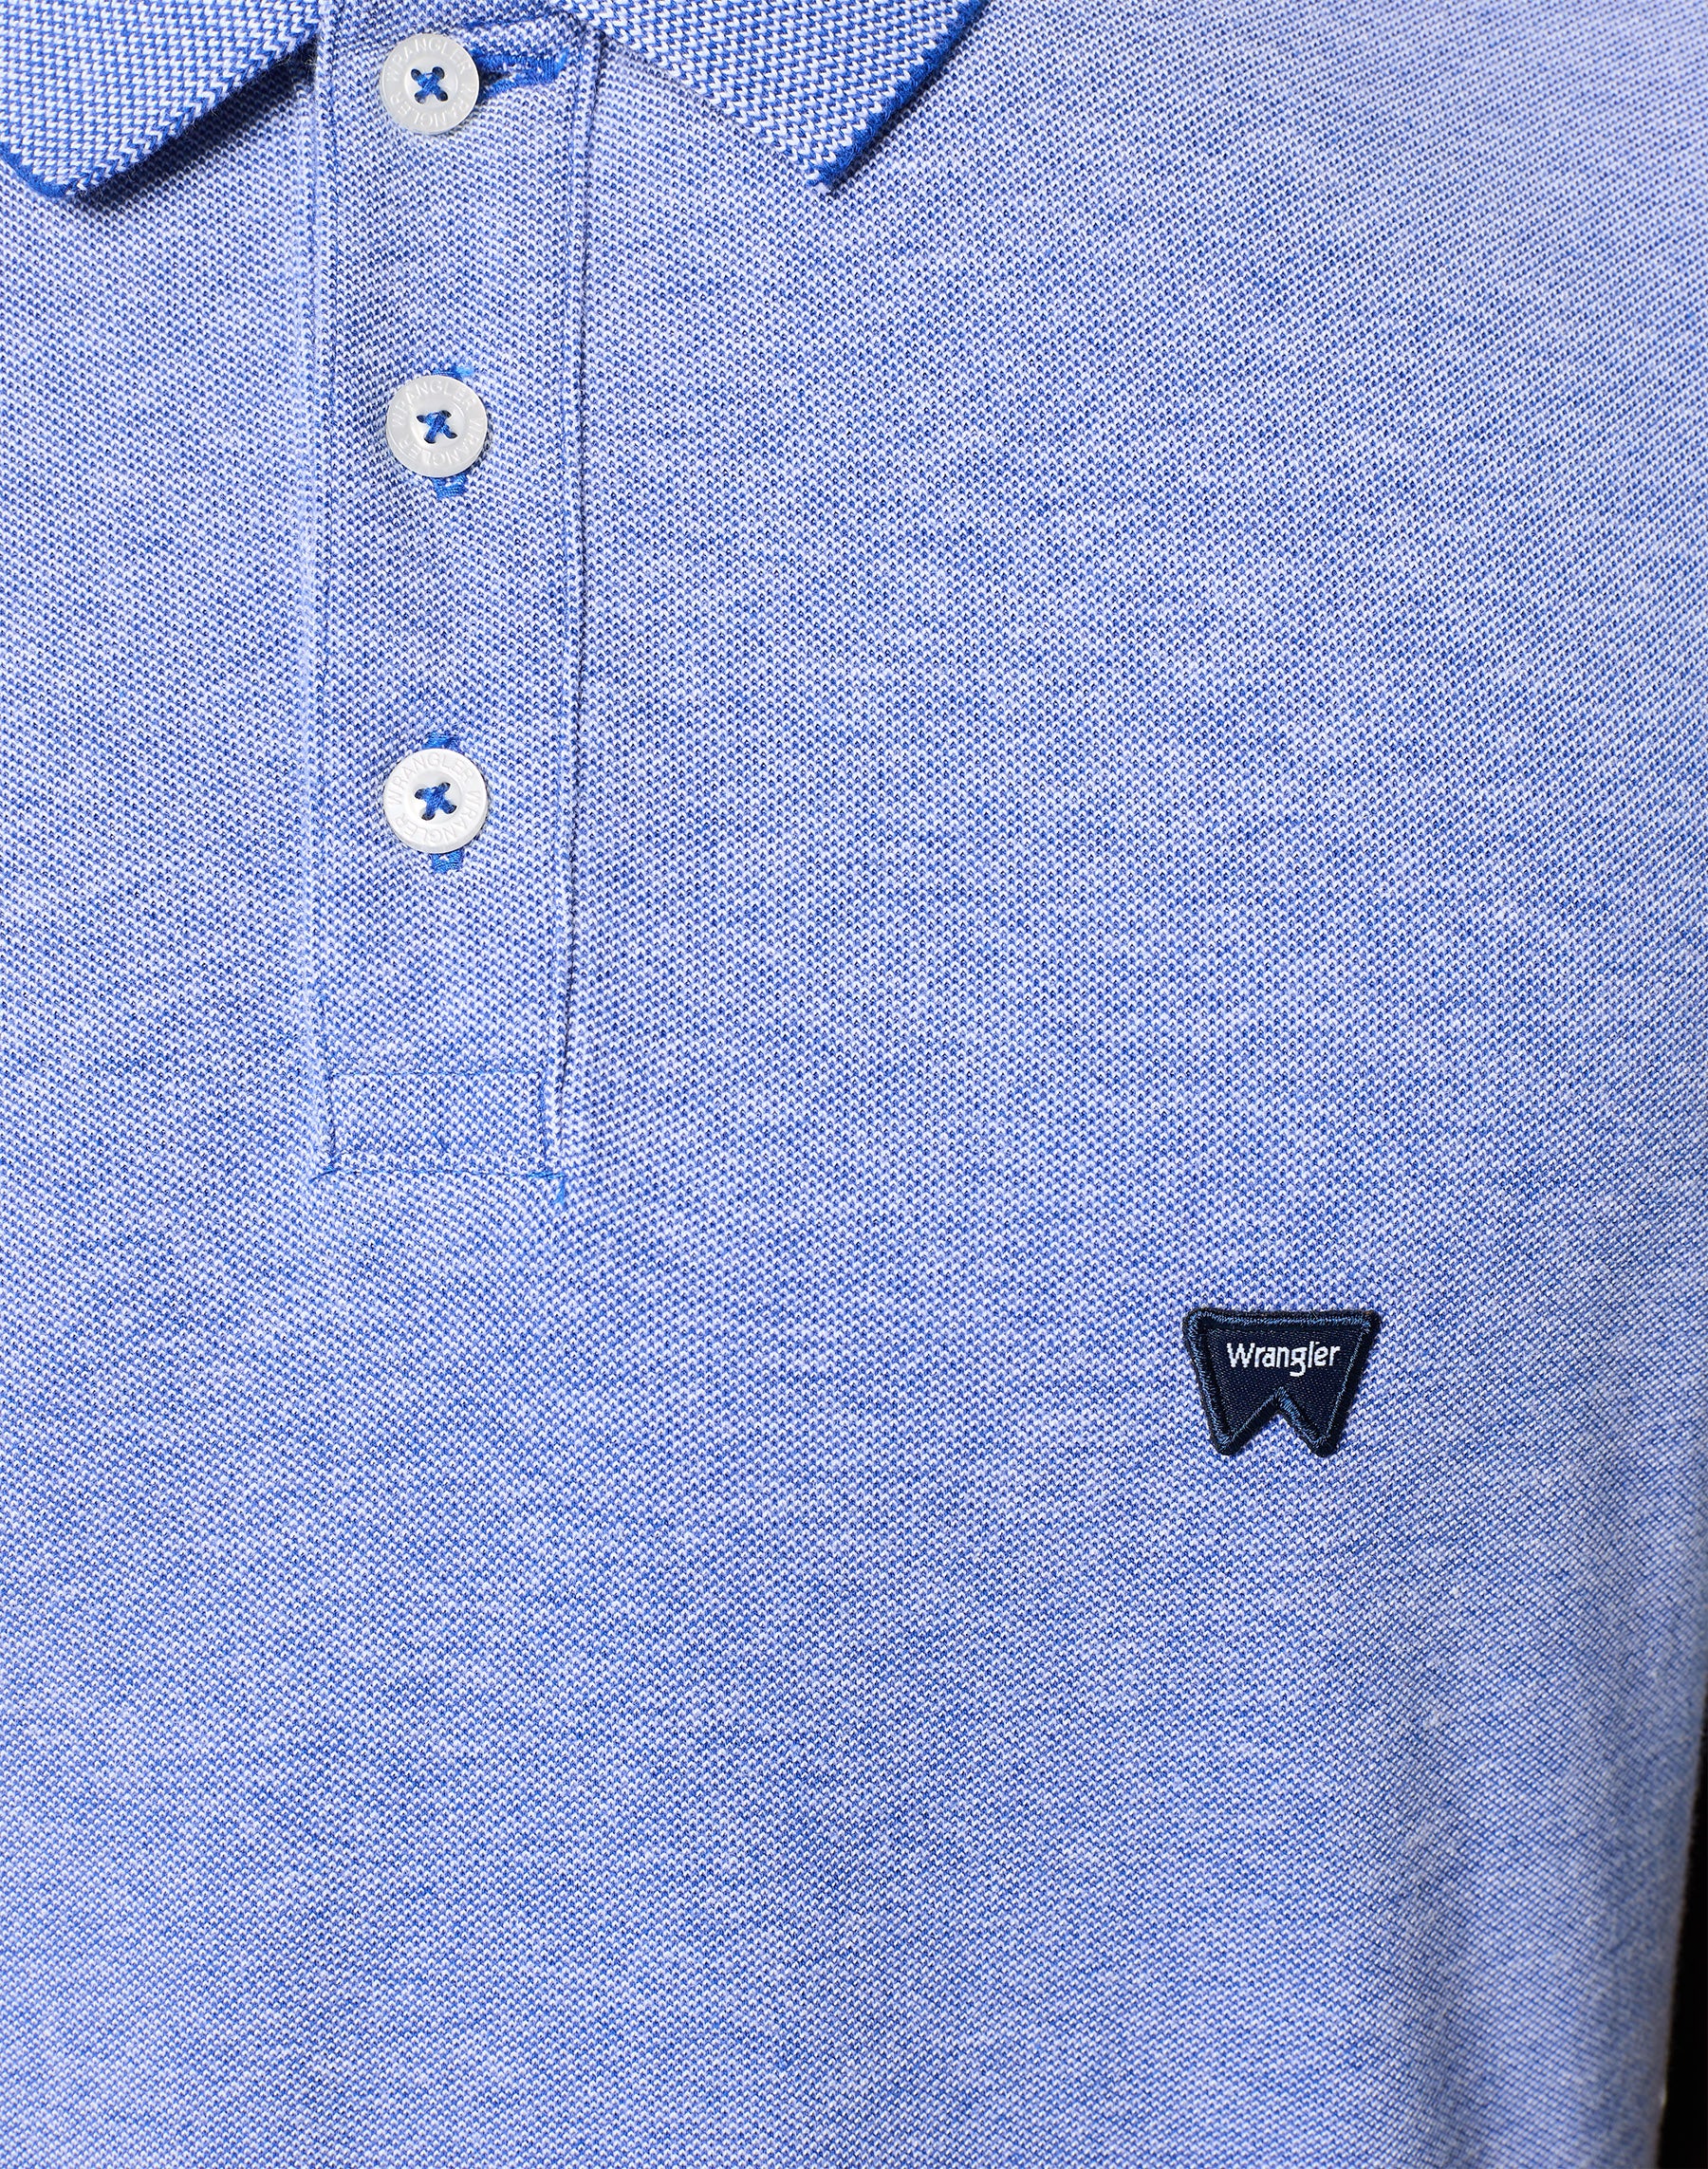 Refined Polo Shirt in Blue Polos Wrangler   